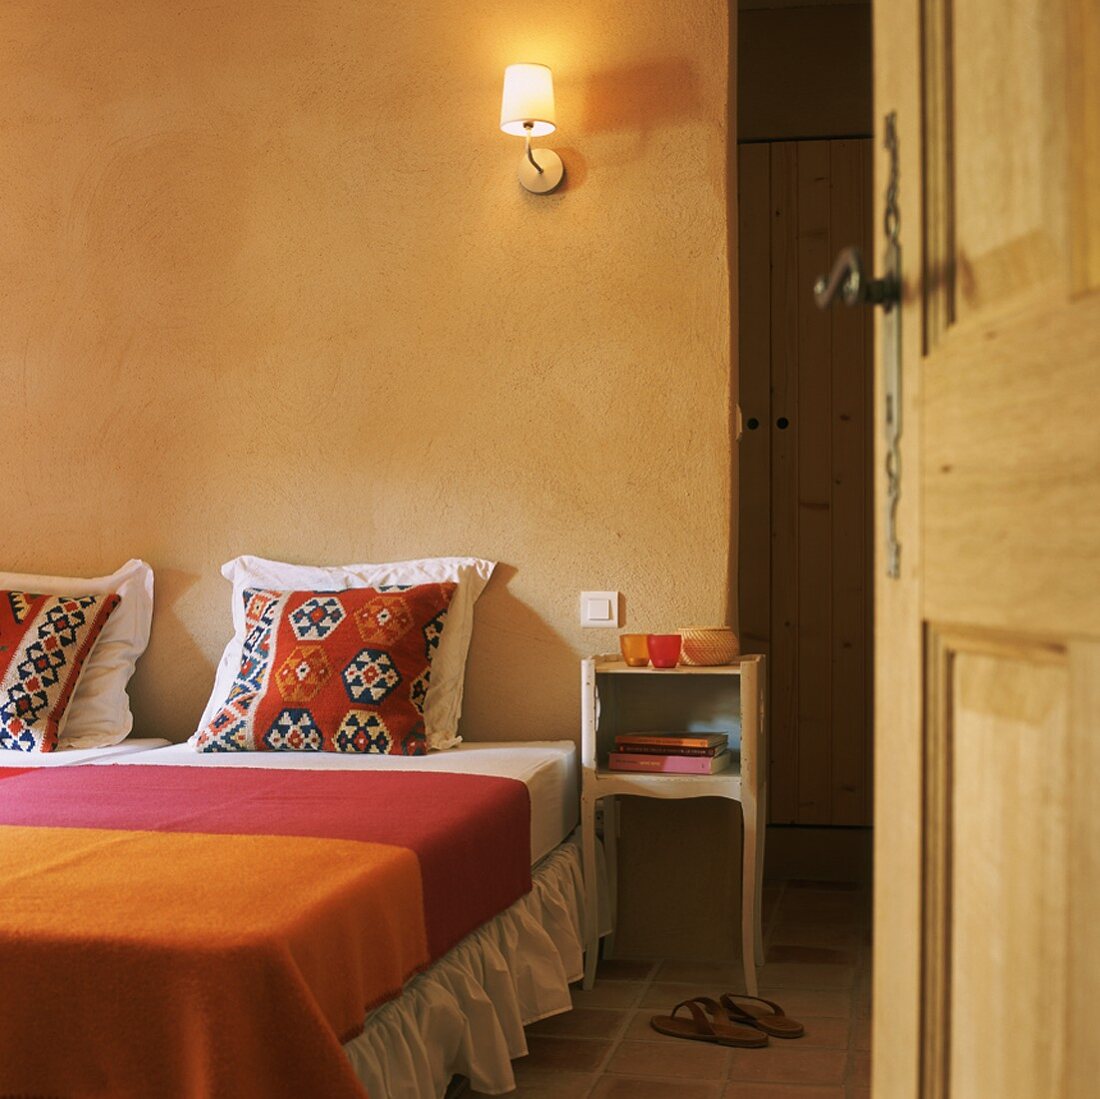 Schlafraum mit Terrakottafliesen, Doppelbett mit Ethnokissen und bunter Tagesdecke